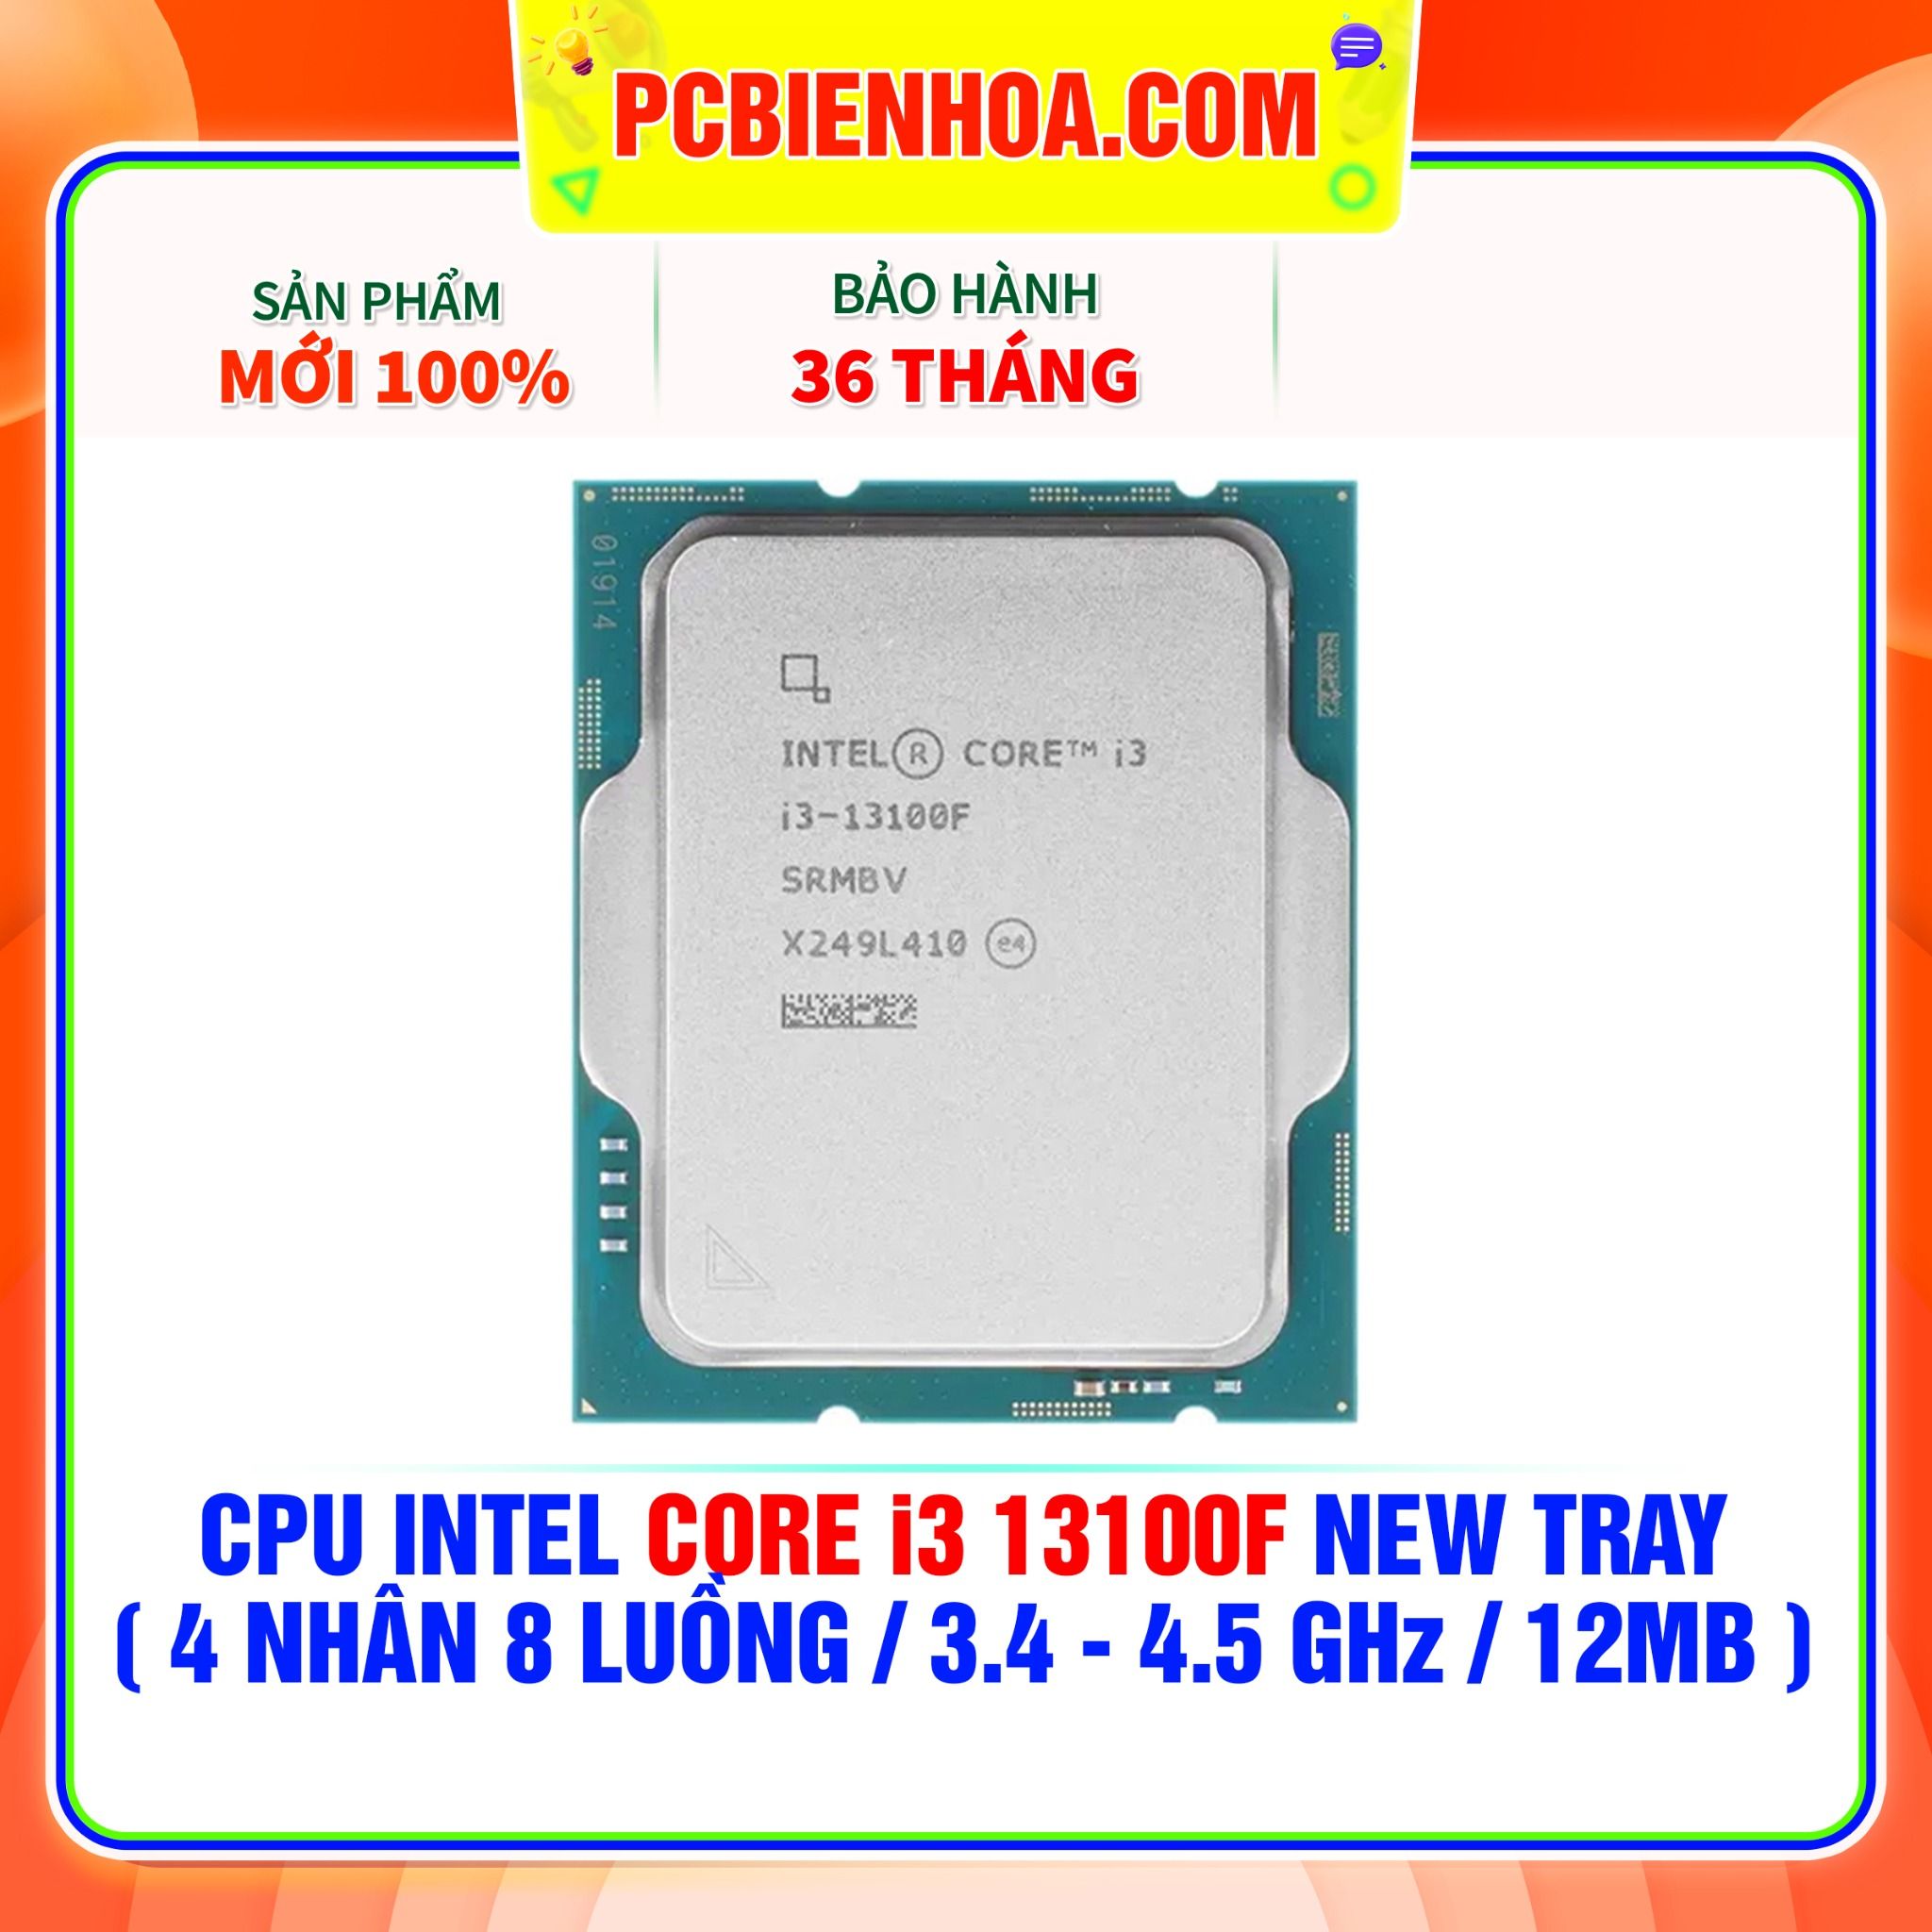  CPU INTEL CORE i3 13100F NEW TRAY - CHƯA KÈM TẢN NHIỆT ( 4 NHÂN 8 LUỒNG / 3.4 - 4.5 GHz / 12MB ) 